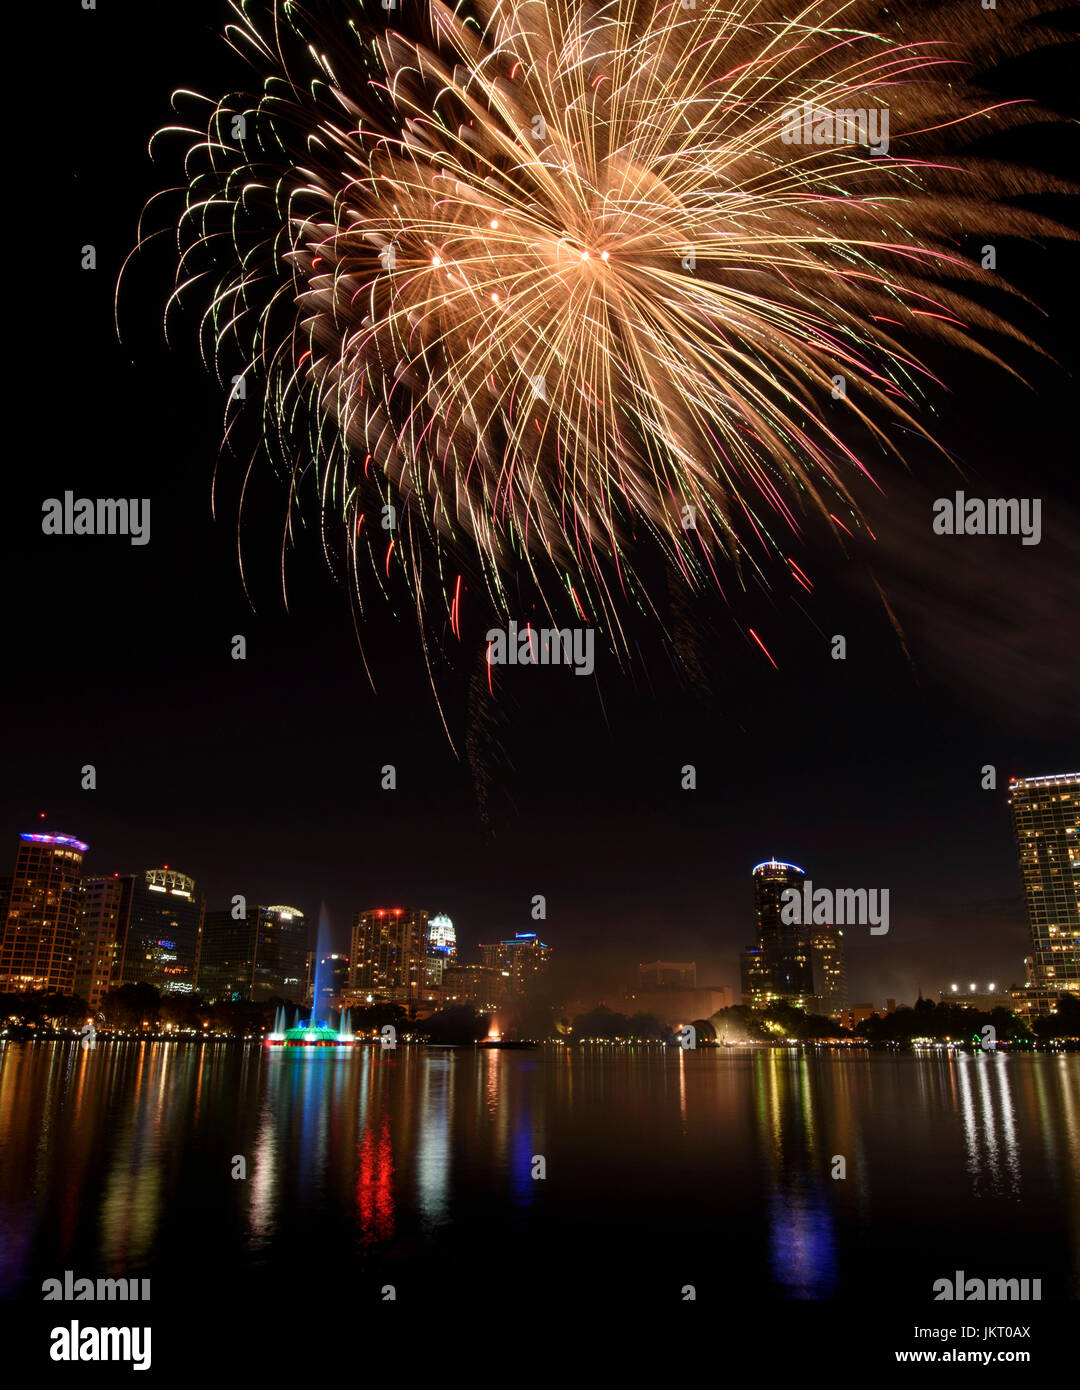 Am 4. Juli Feuerwerk am Lake Eola Park in der Innenstadt von Orlando, Florida. Stockfoto